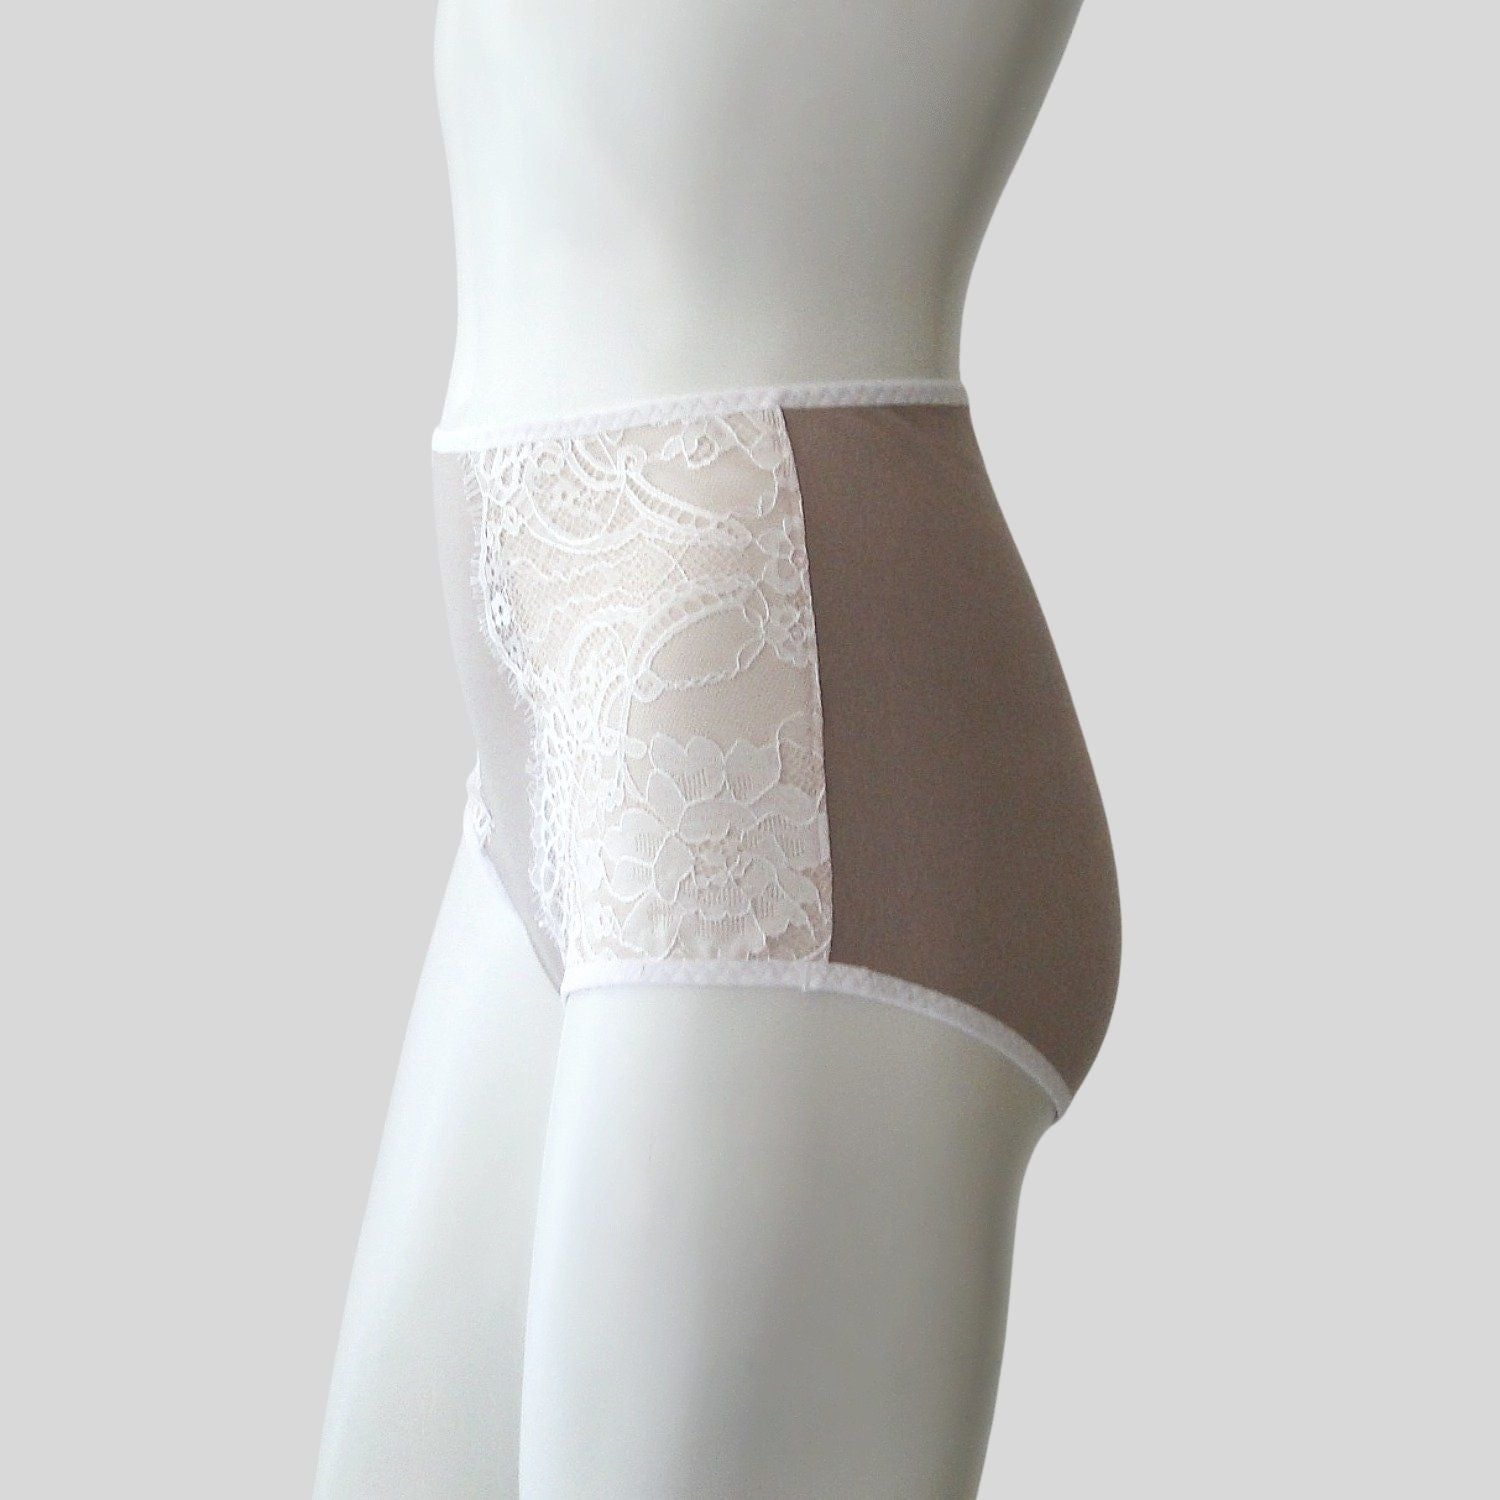 High-cut french lace underwear brief